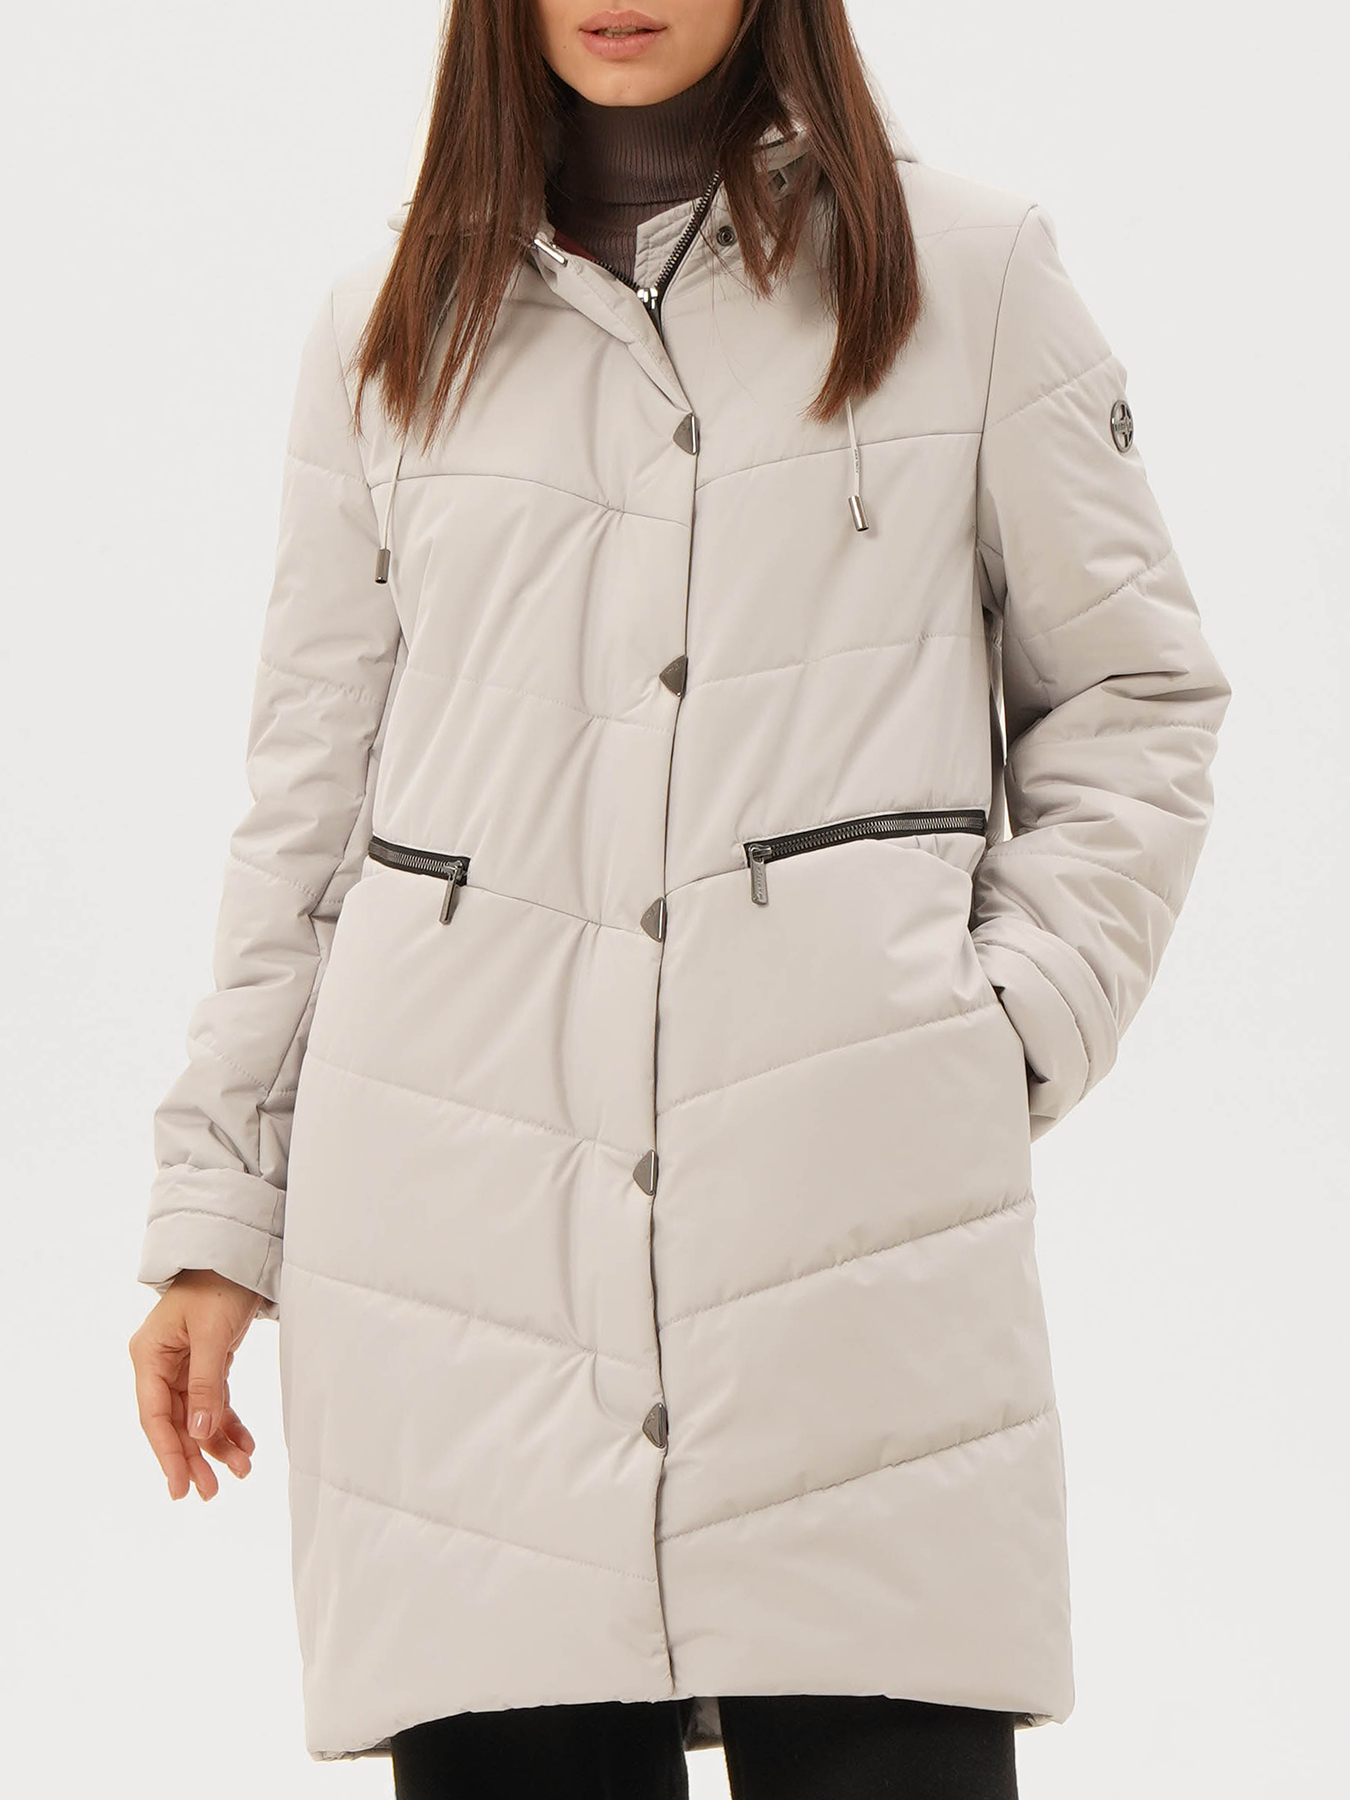 Пальто зимнее Maritta 433513-020, цвет серый, размер 44